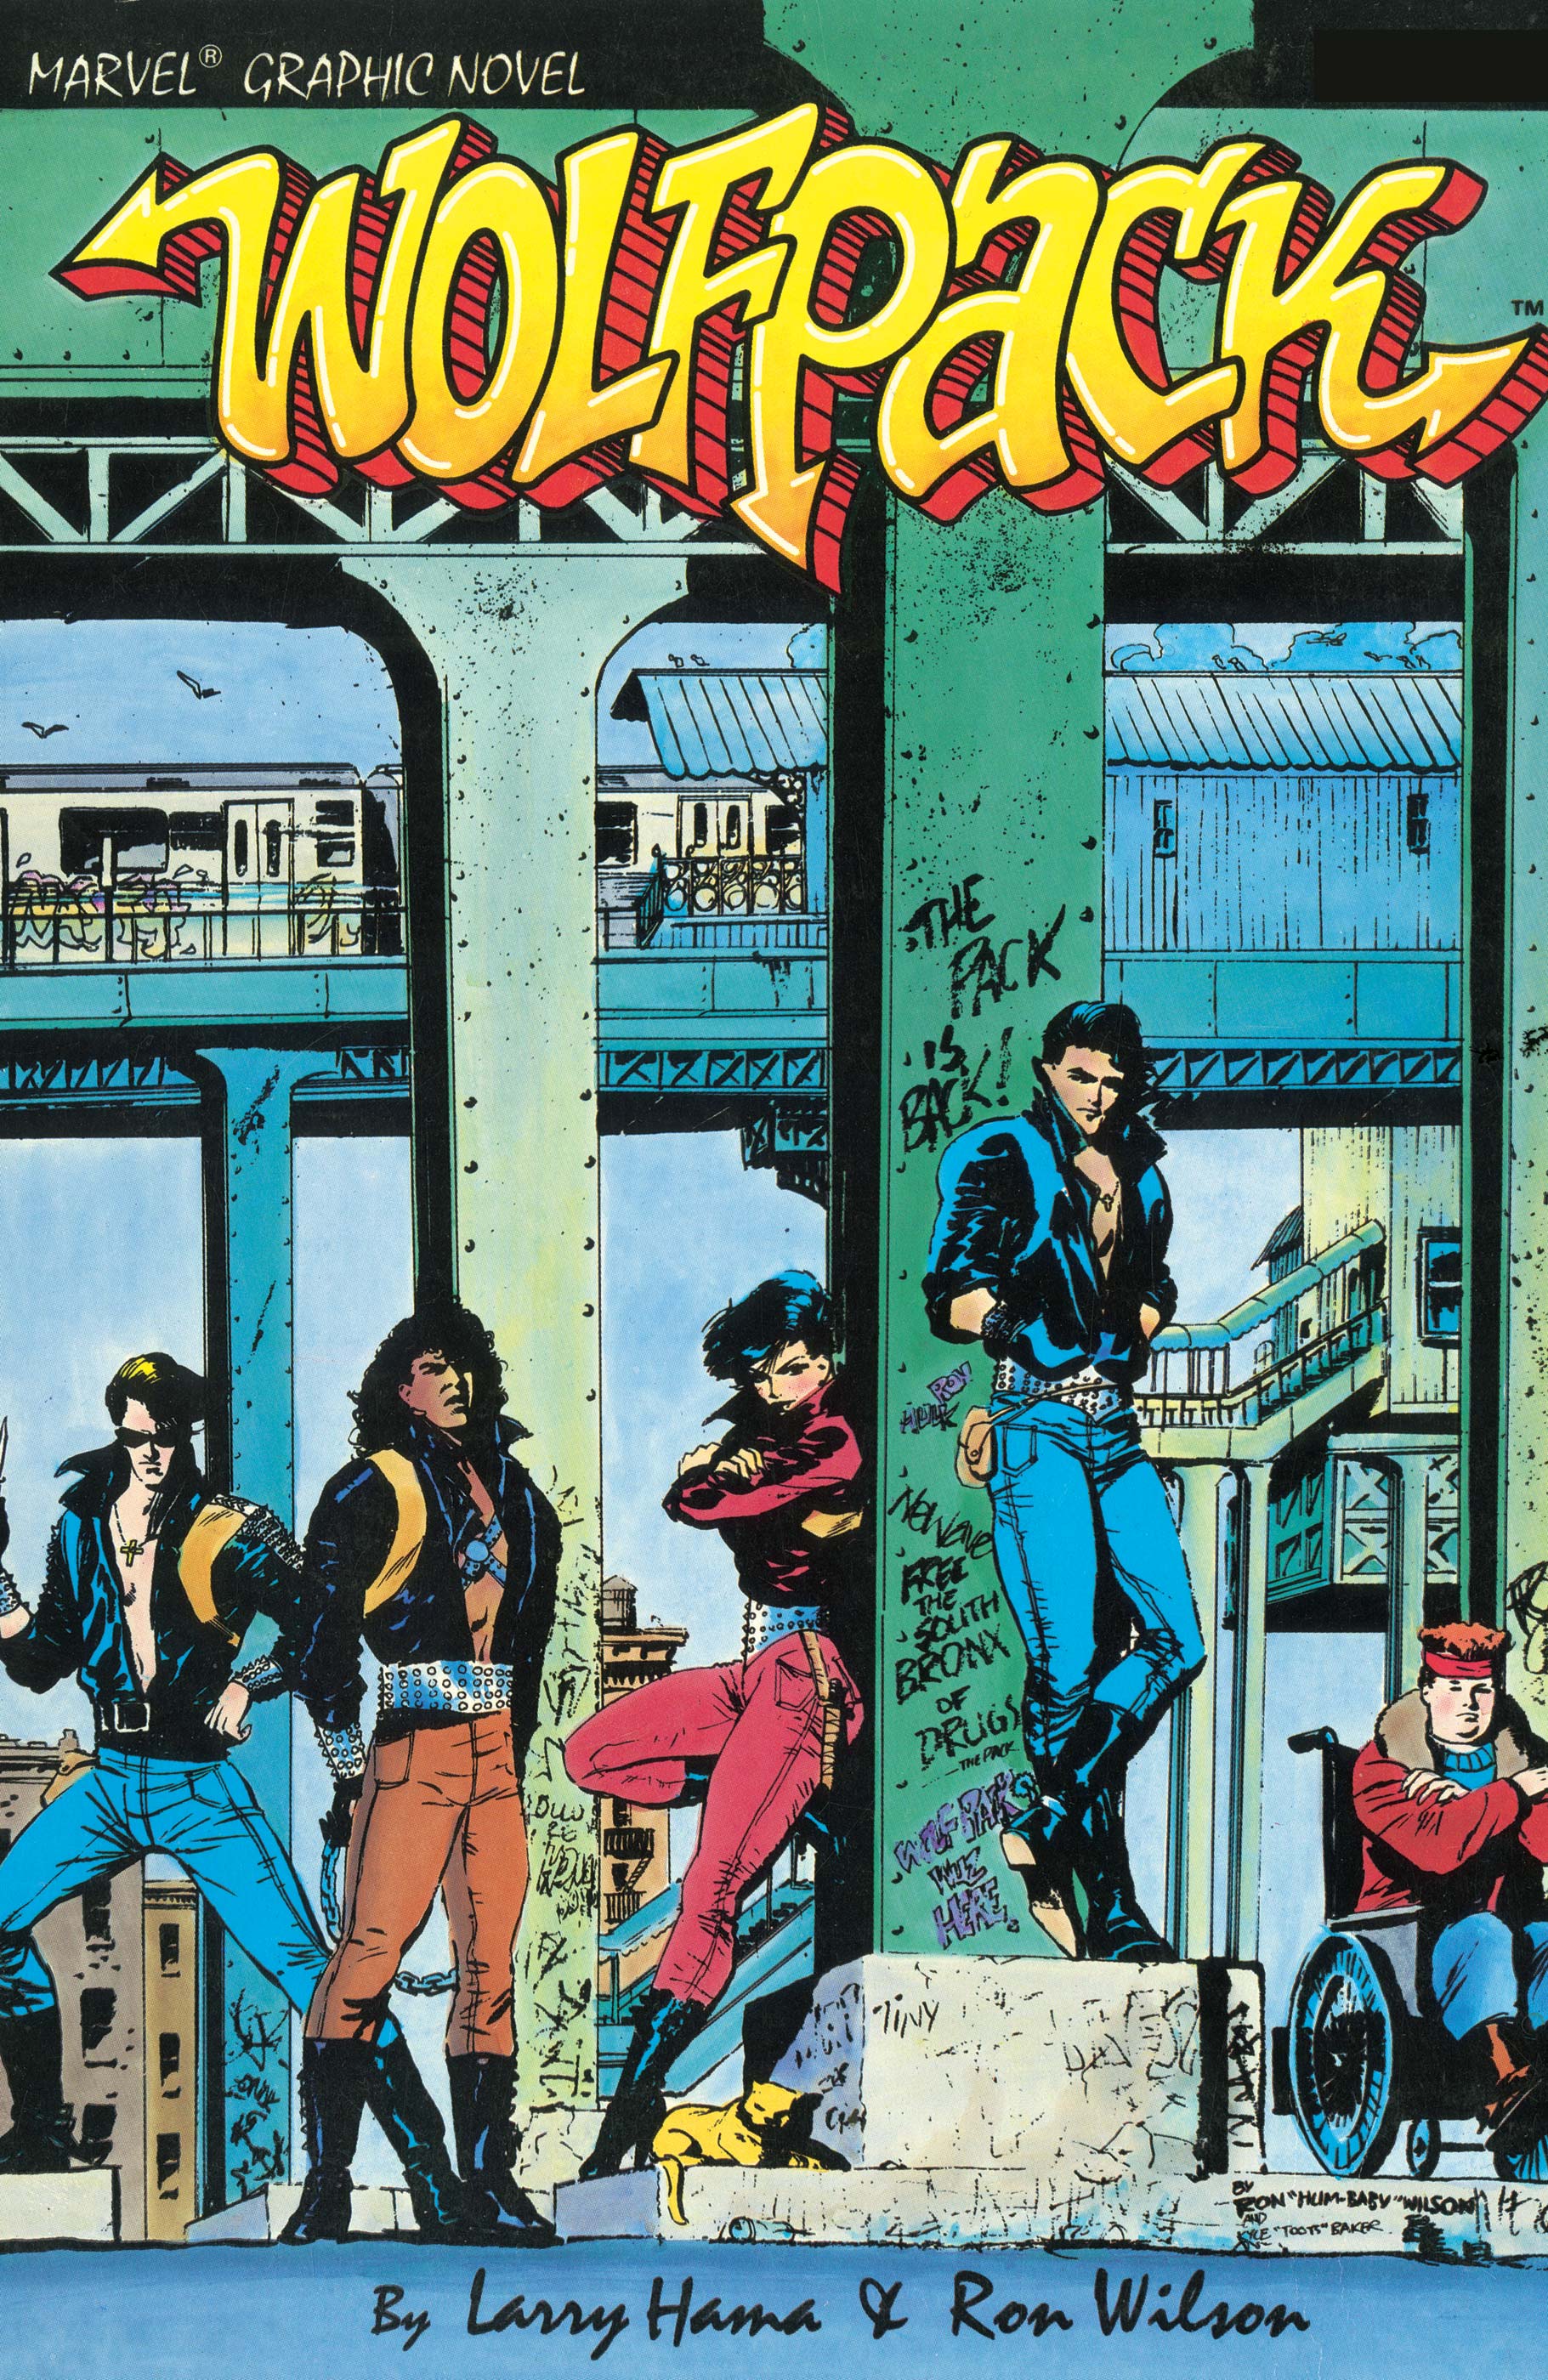 Wolfpack Marvel Graphic Novel (1987)